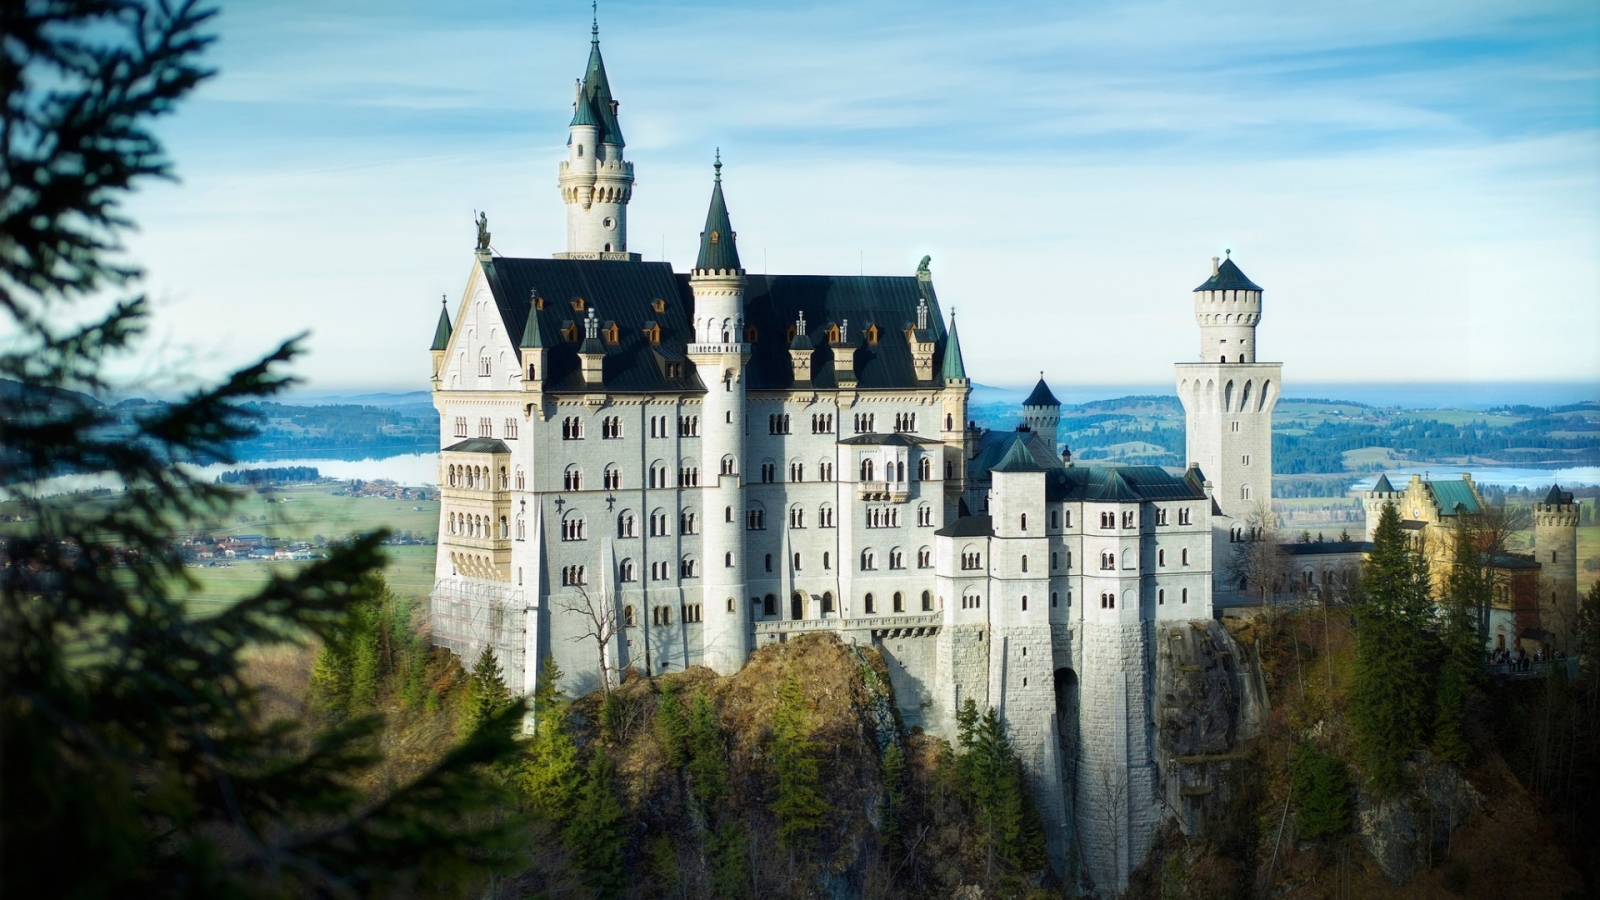 Bavaria Neuschwanstein Castle for 1600 x 900 HDTV resolution